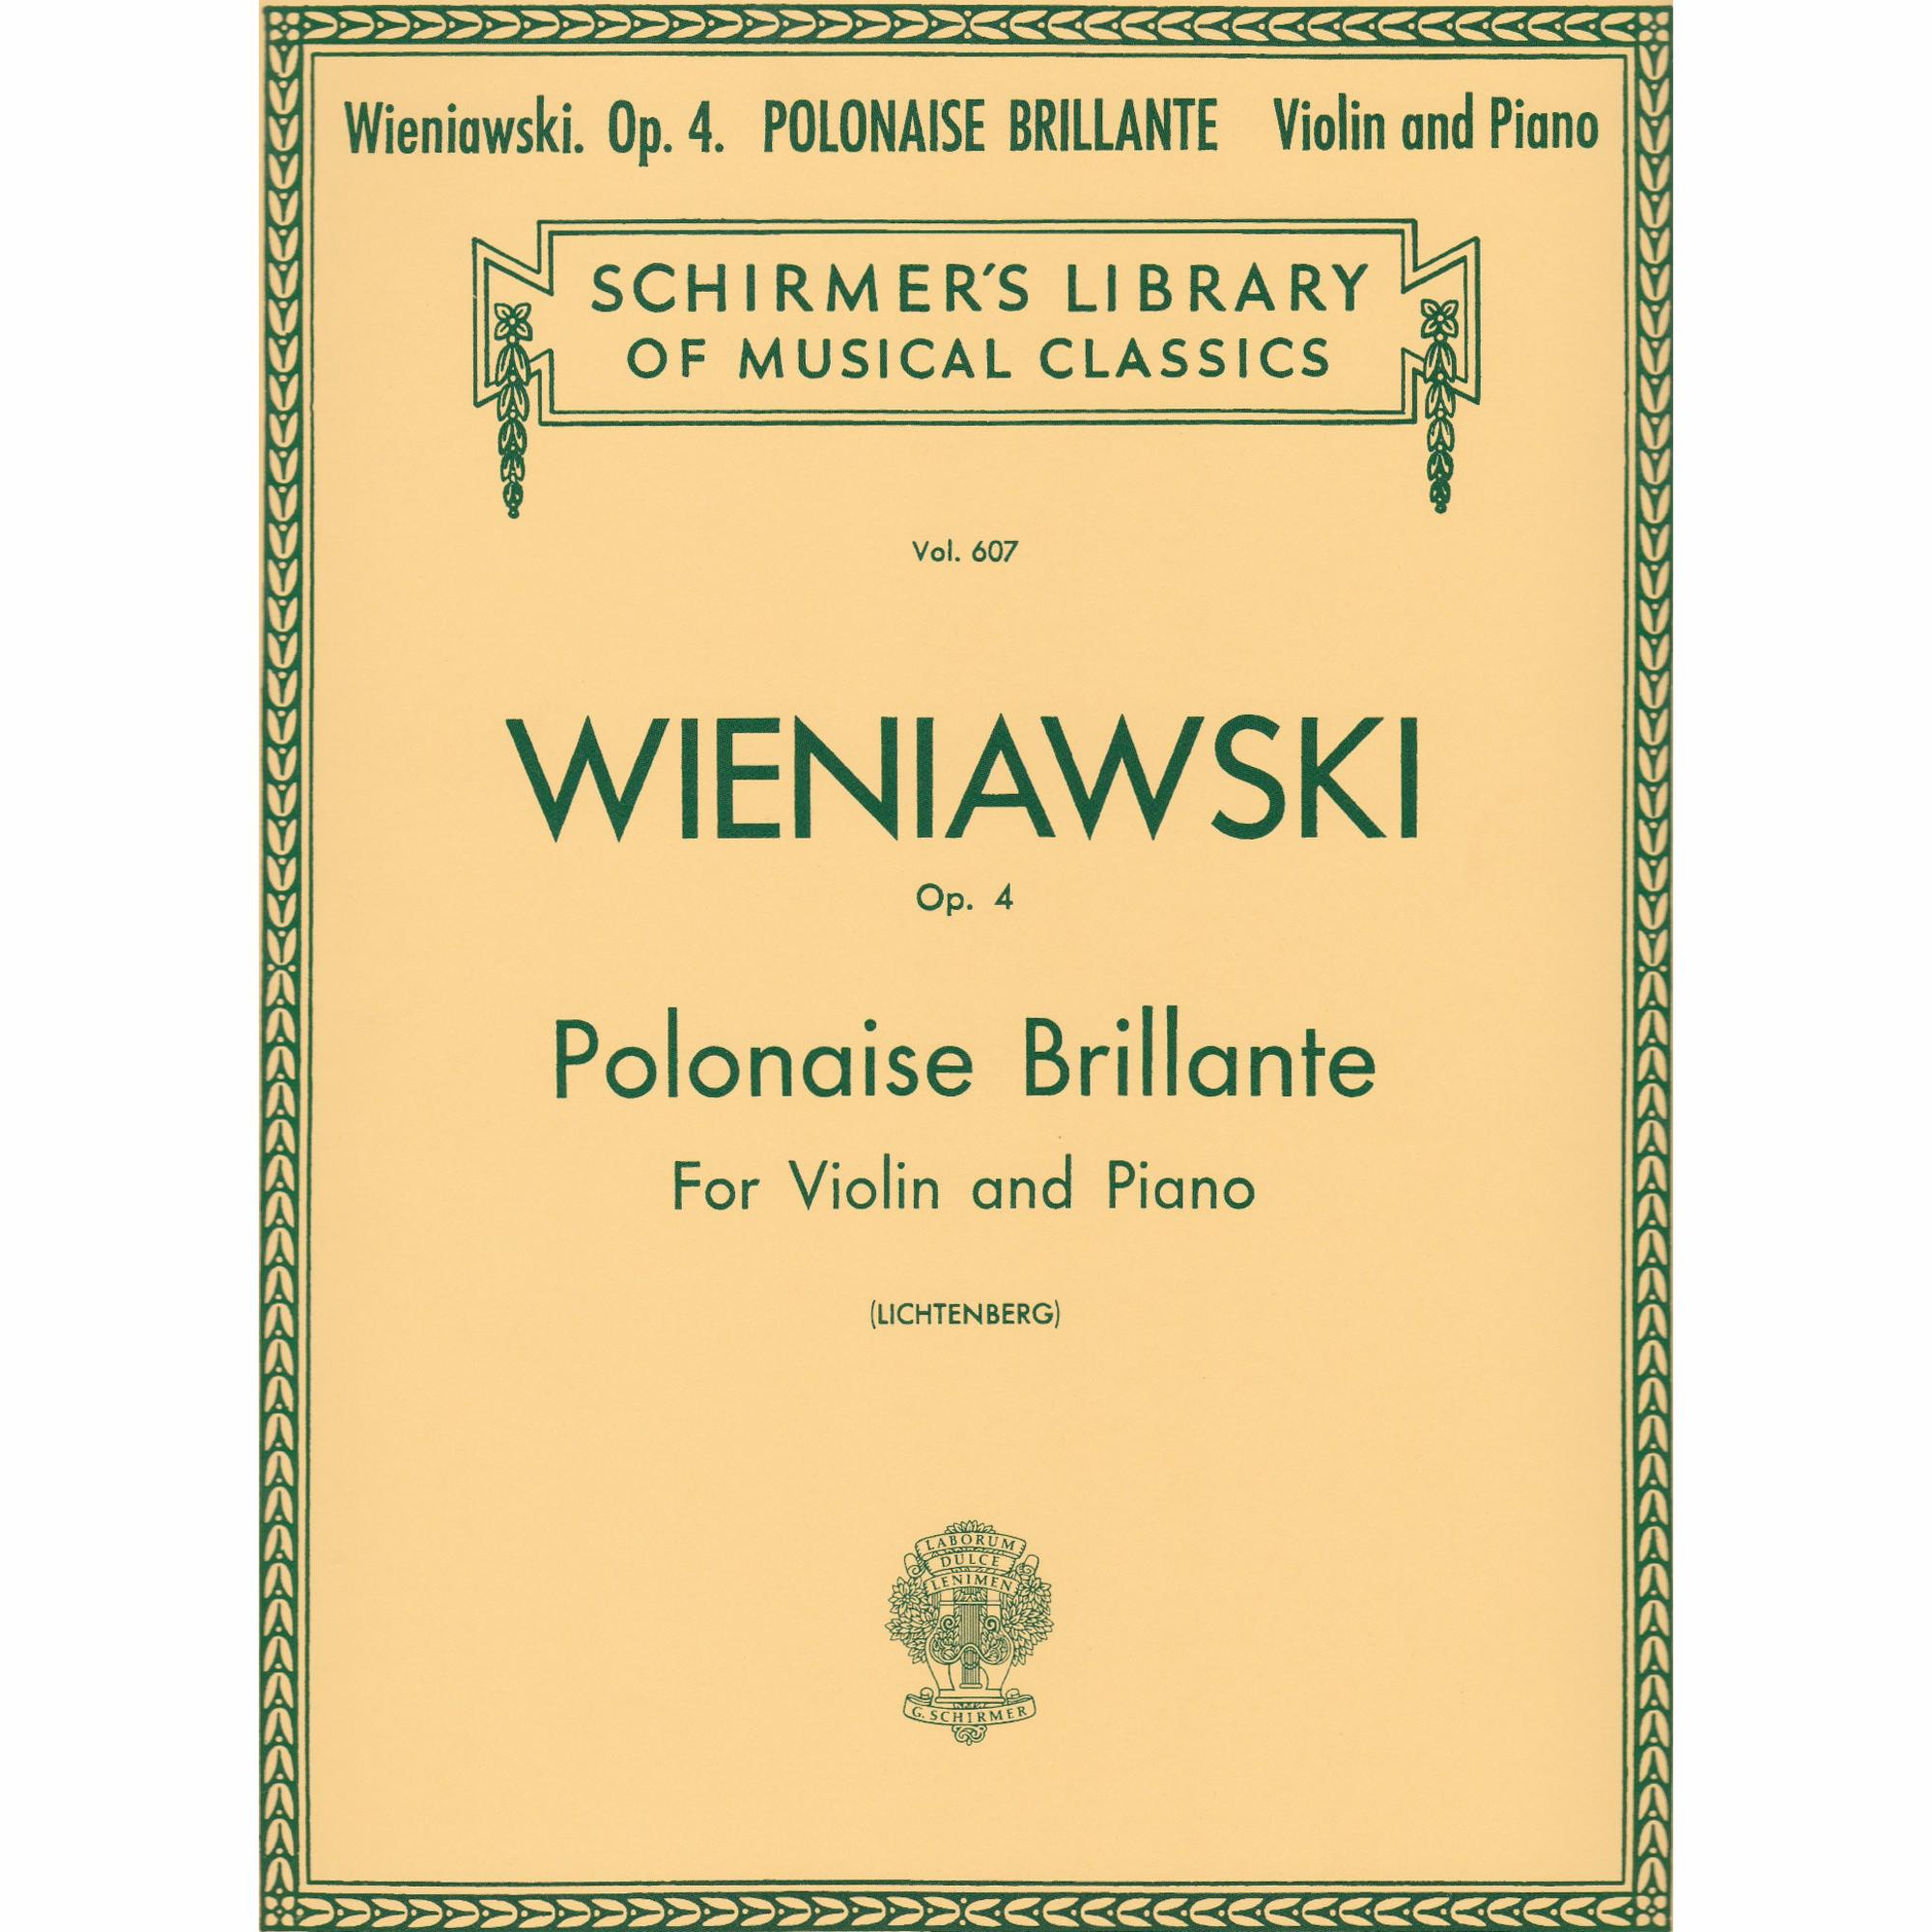 Polonaise Brillante No. 1 in D Major, Op. 4